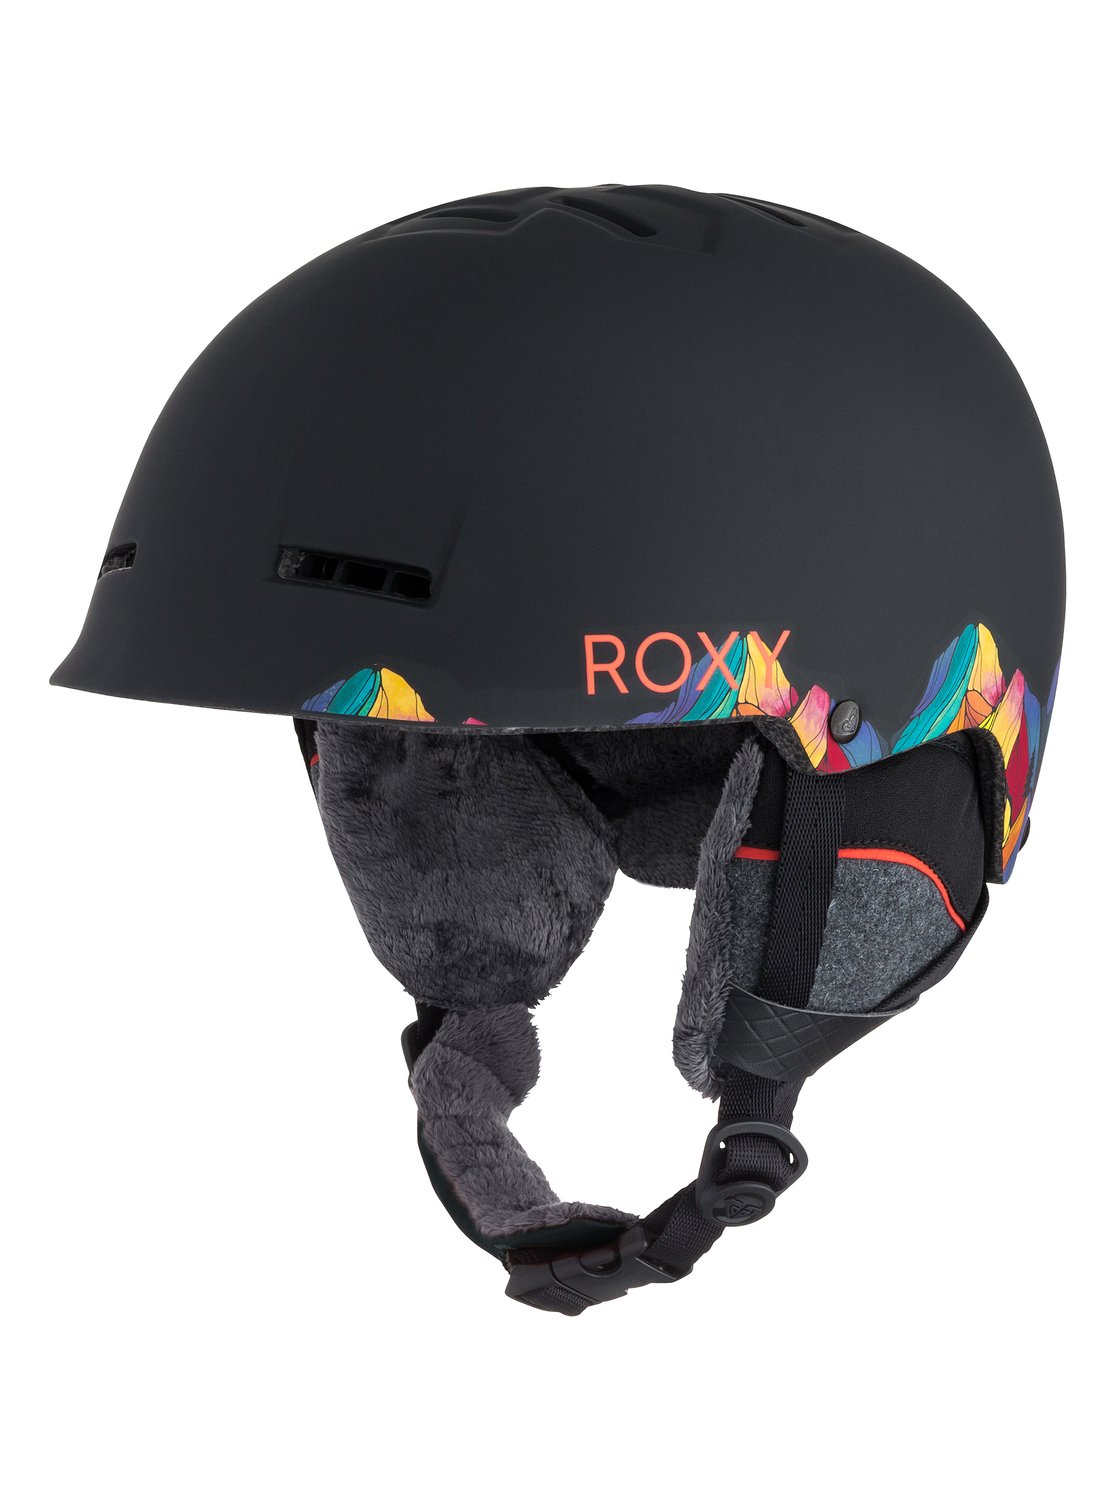 Avery - Casque de snowboard pour femme - Roxy